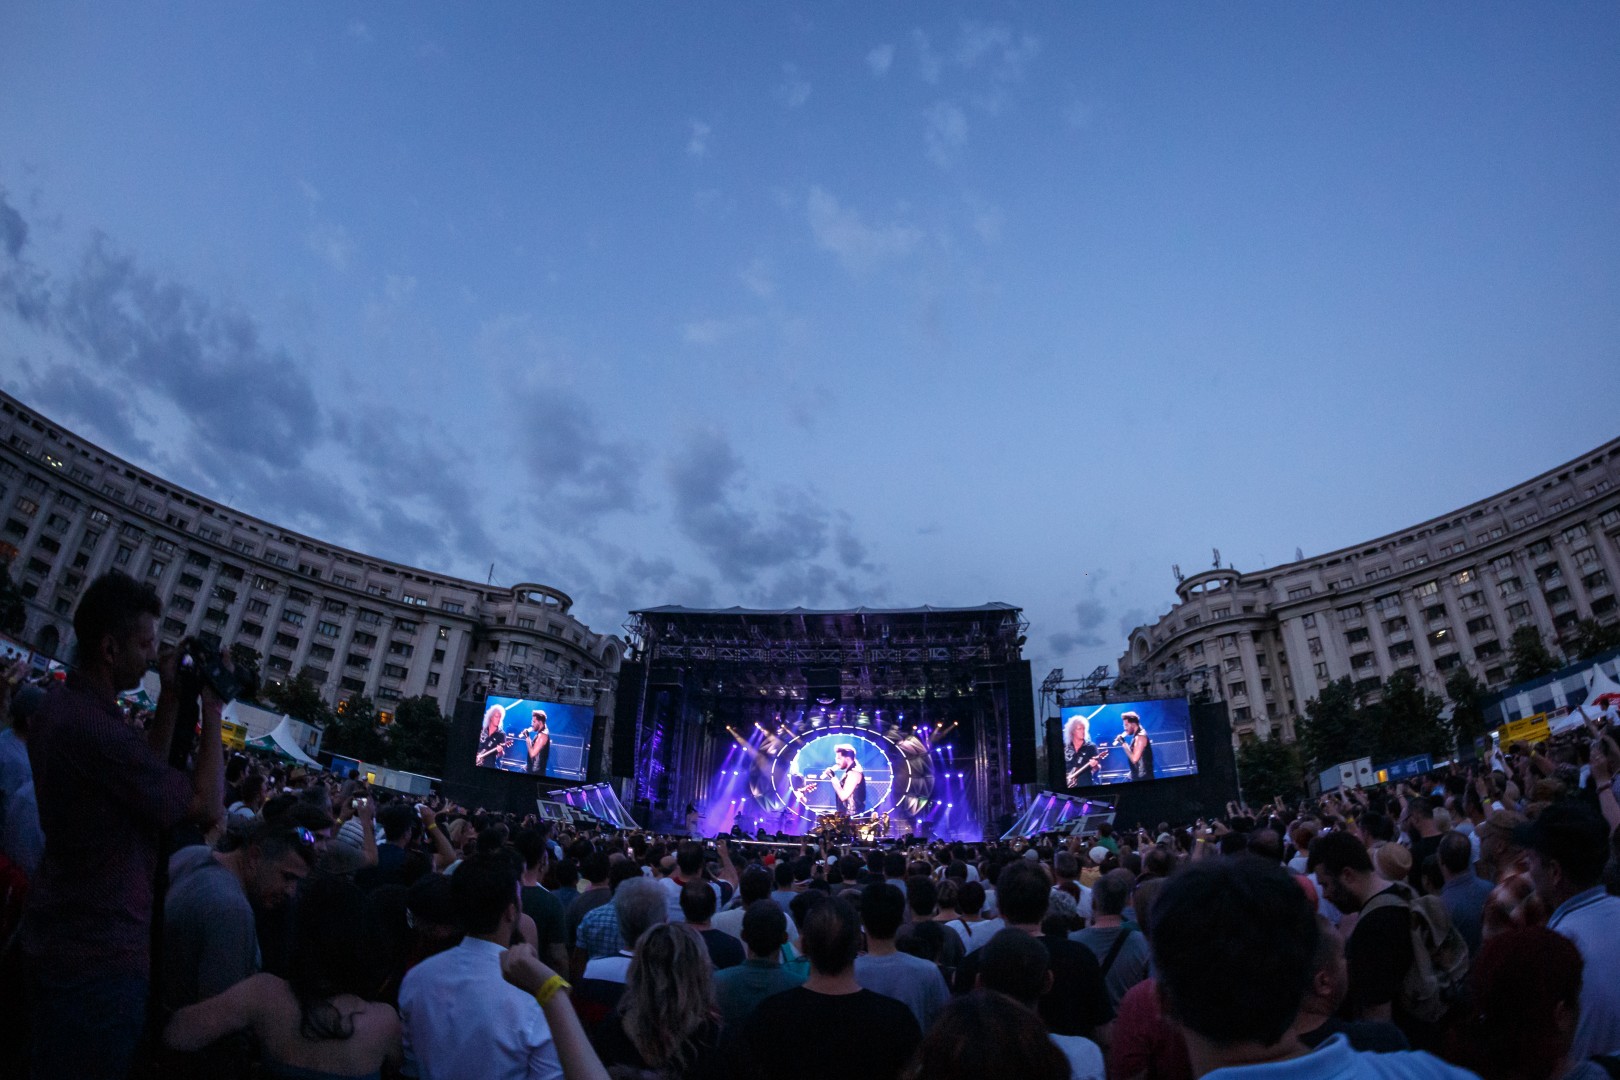 Queen & Adam Lambert at Piața Constituției in Bucharest on June 21, 2016 (c6f6cff019)